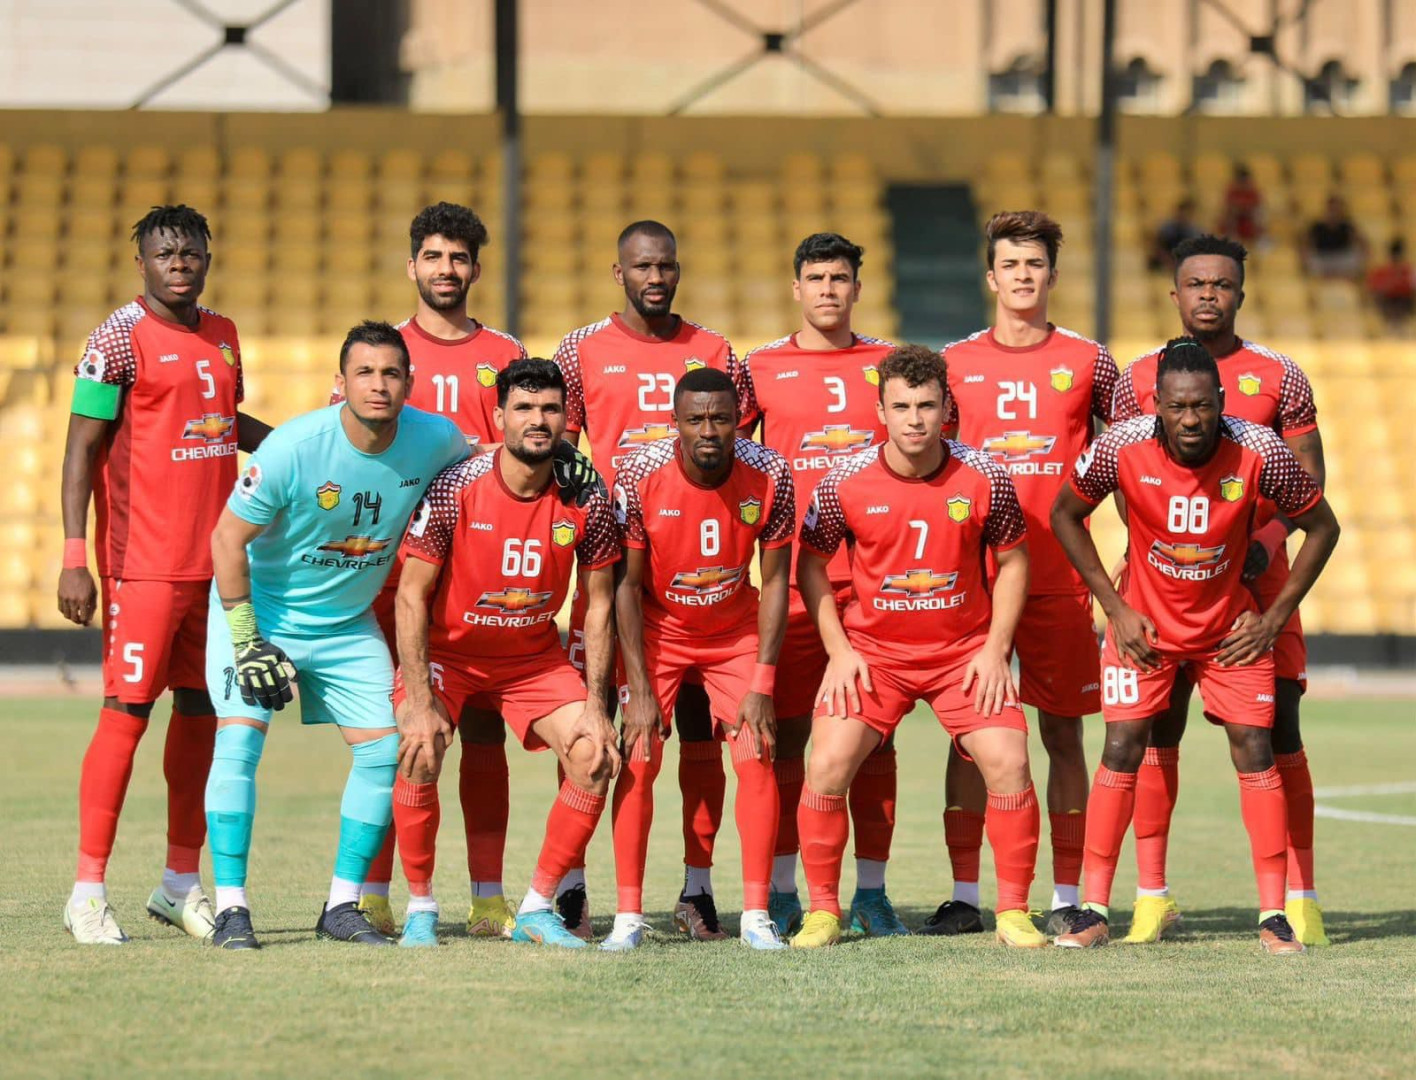 الحدود يتأهل لدور الثمانية بفوزه على الشرقاط في مباراة مؤجلة لبطولة كأس العراق